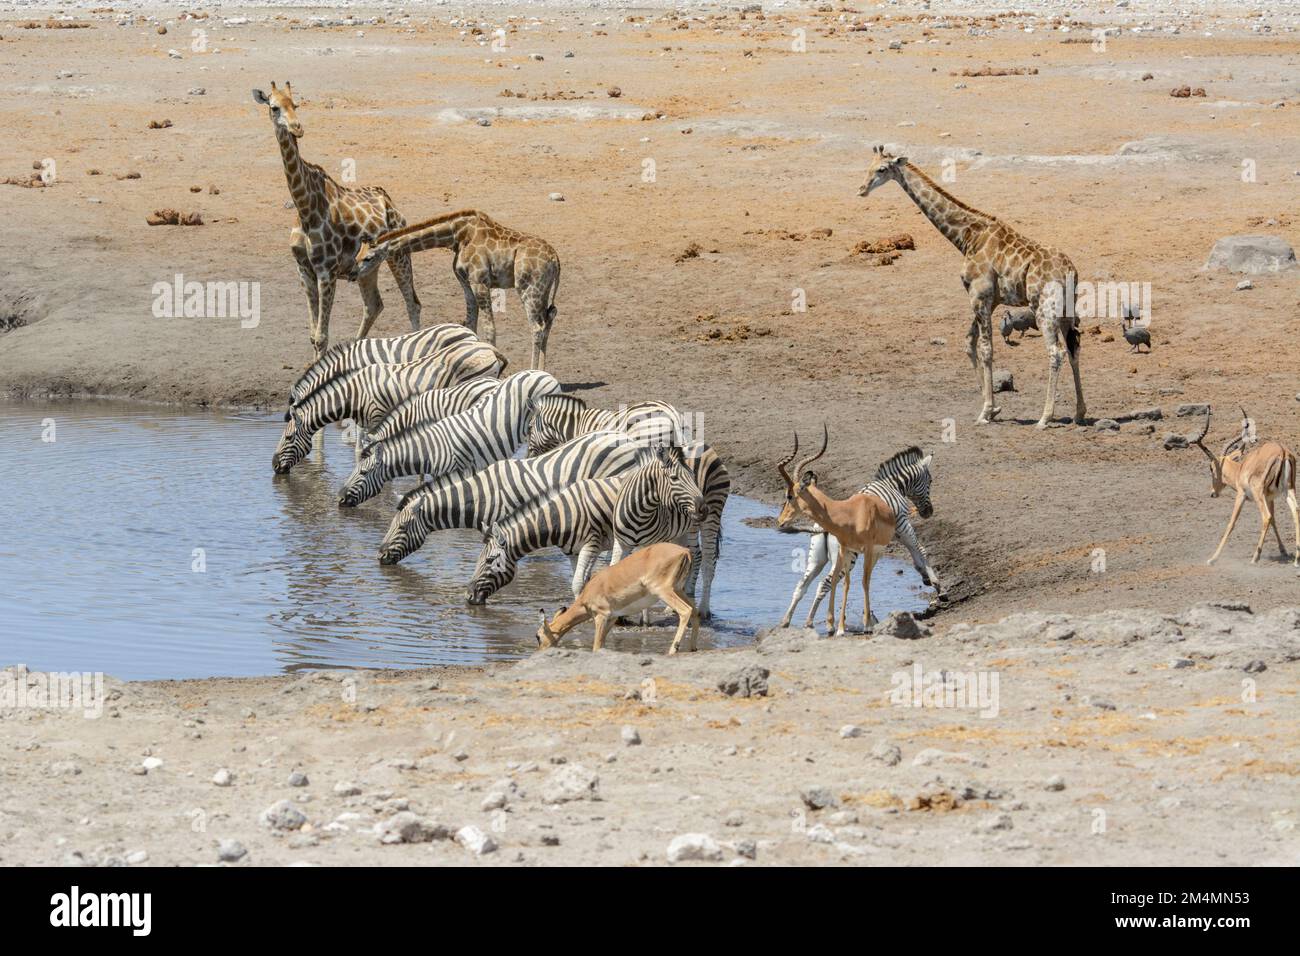 Giraffe, zebra and impala at a waterhole in Etosha National Park, Namibia, Southwest Africa Stock Photo